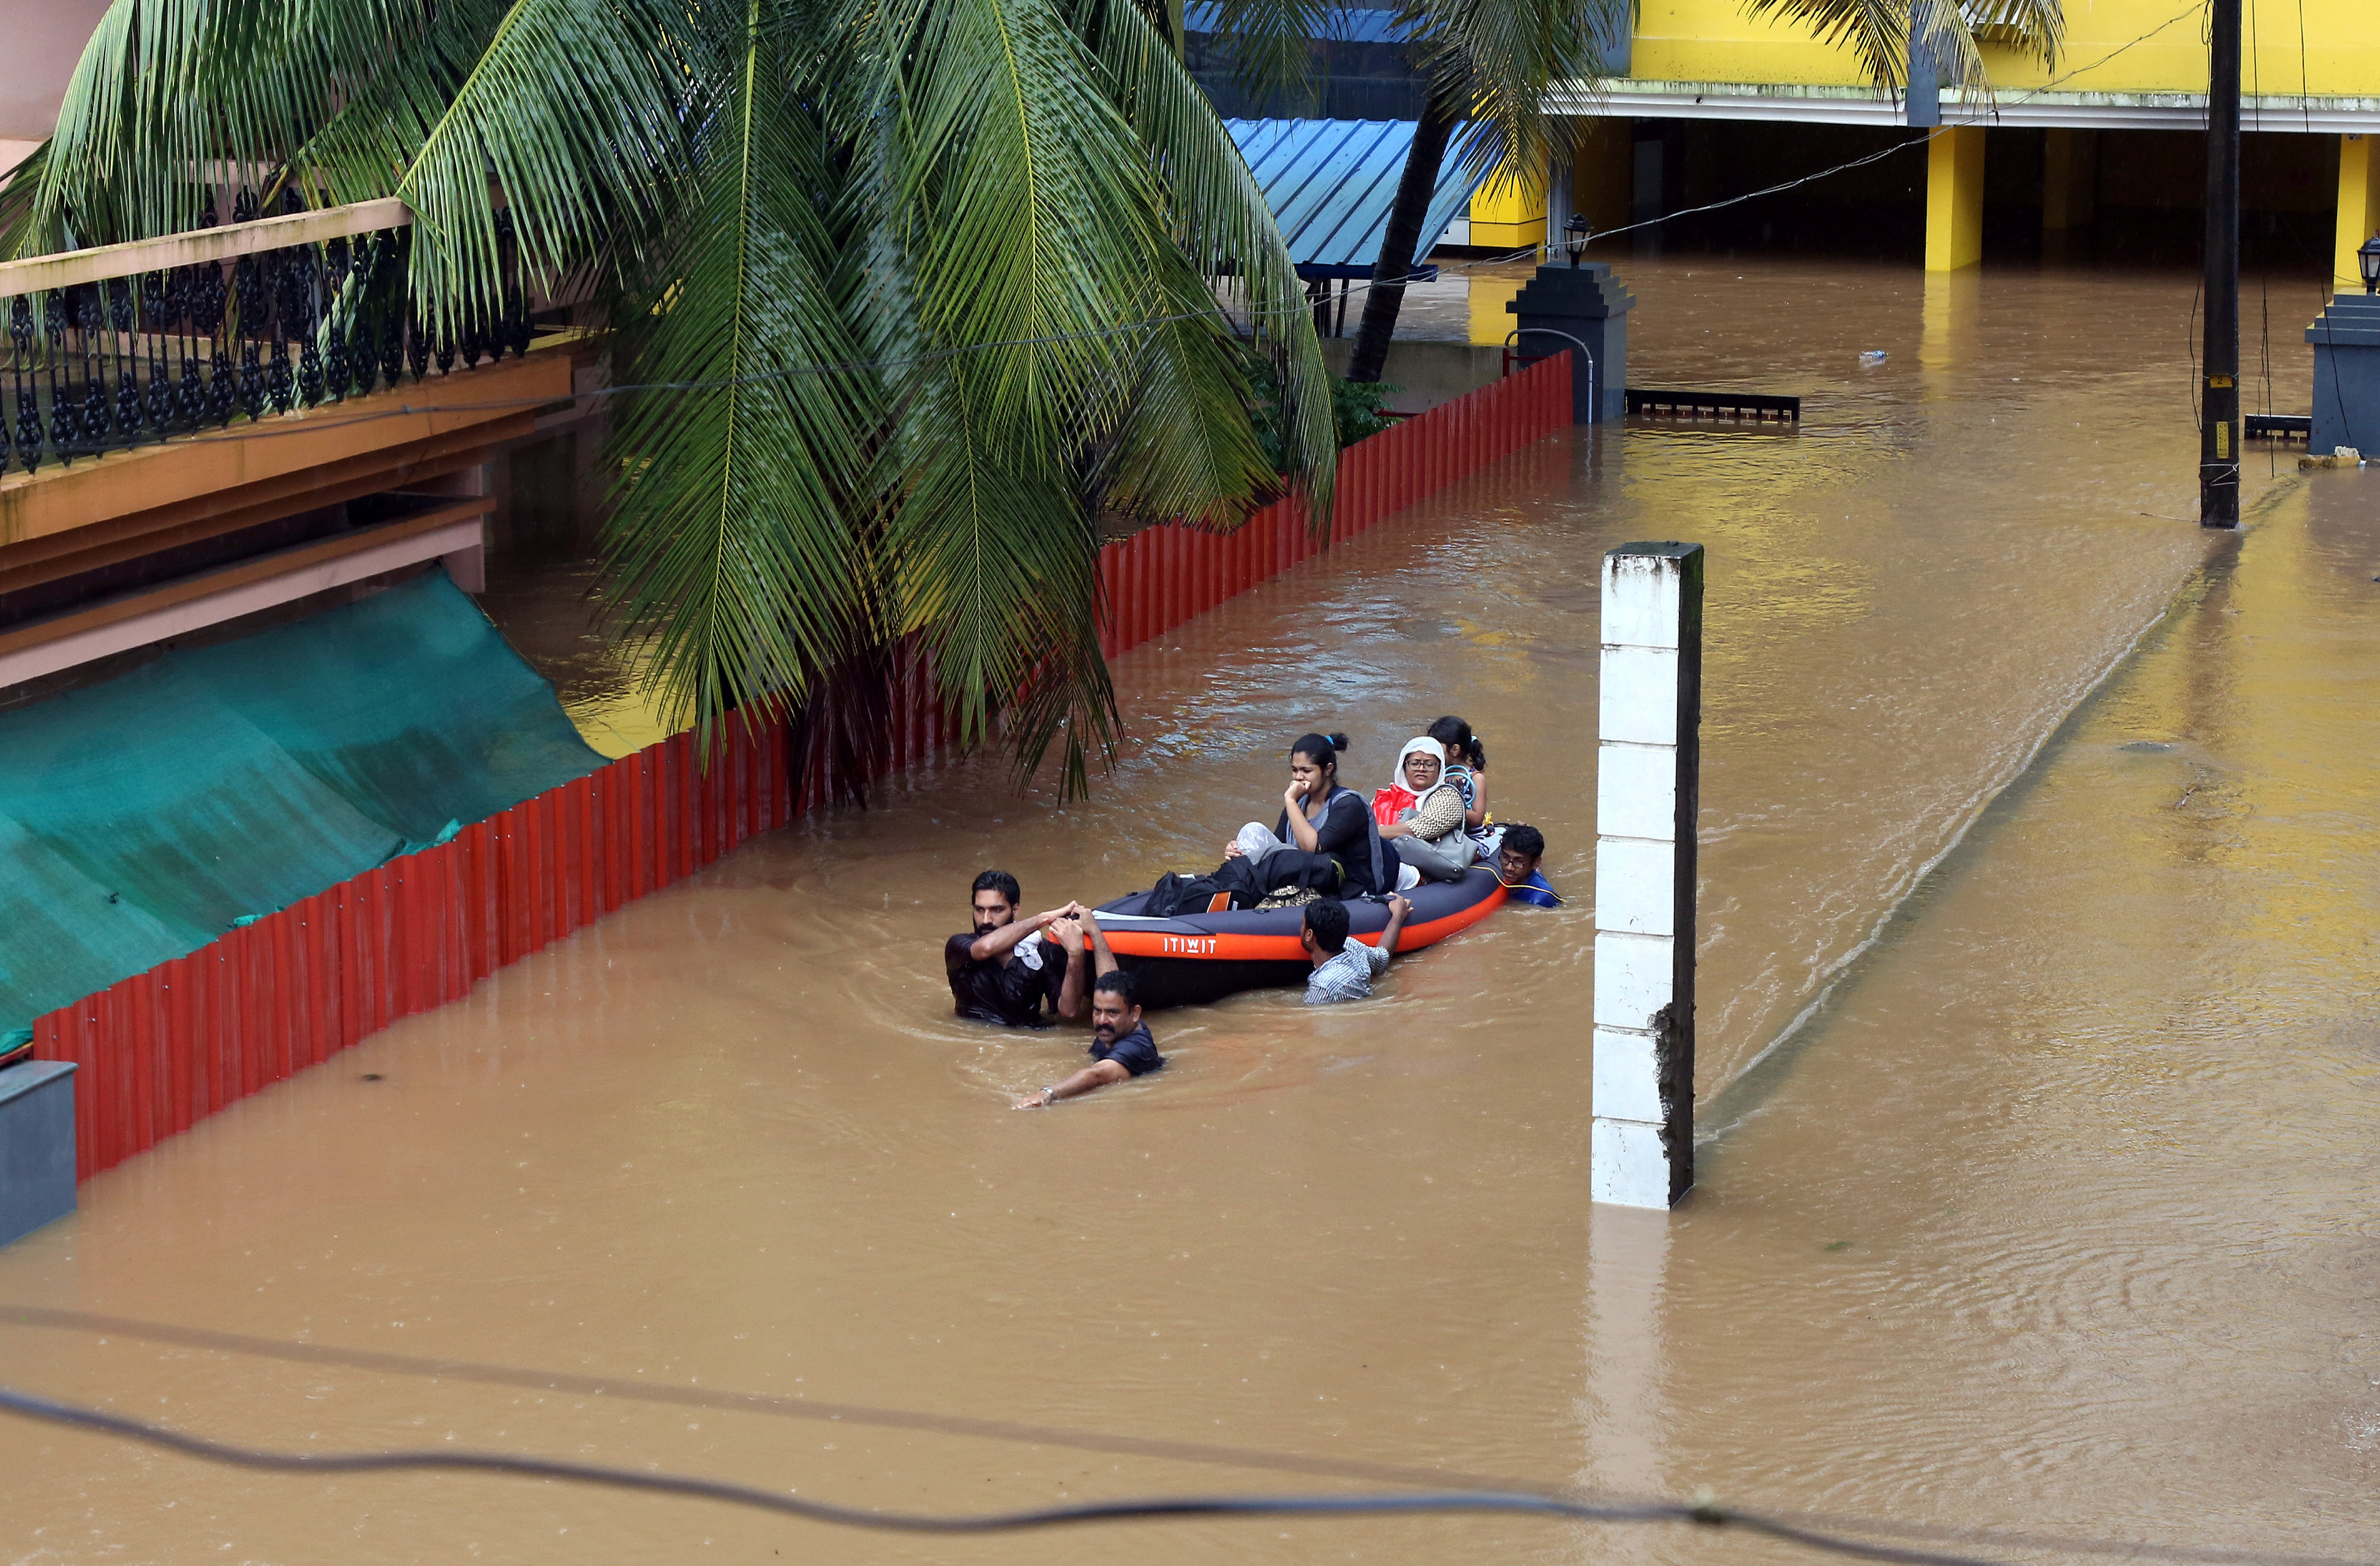 إجلاء الهنود من مناطق الفيضانات بعد افتتاح مصبّات السدود إدامالايار وشيروثوني ومولابياريار